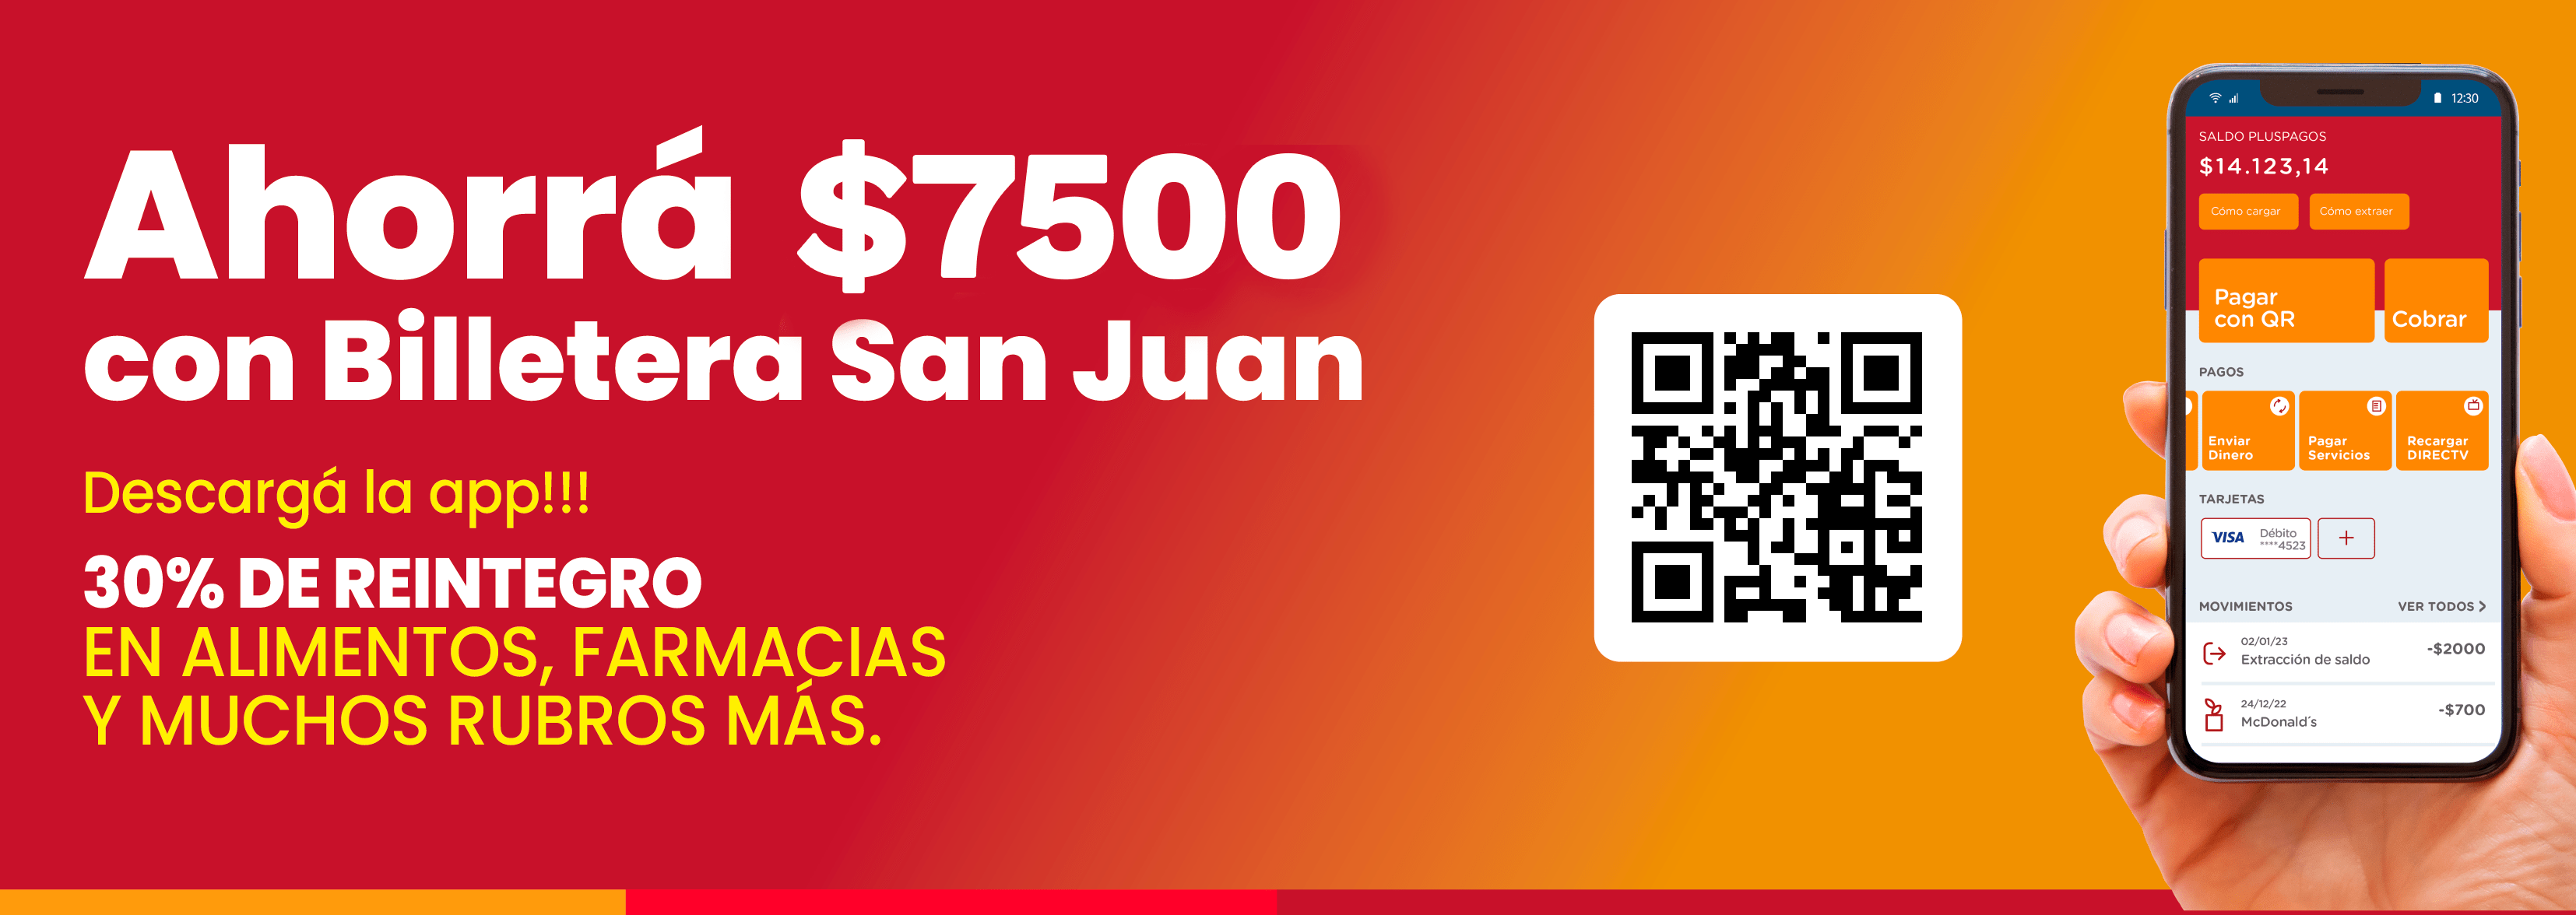 Ahorrá $4000 con Billetera San Juan. Descargá la app. 30% de reintegro en alimentos, farmacias y muchos rubros más